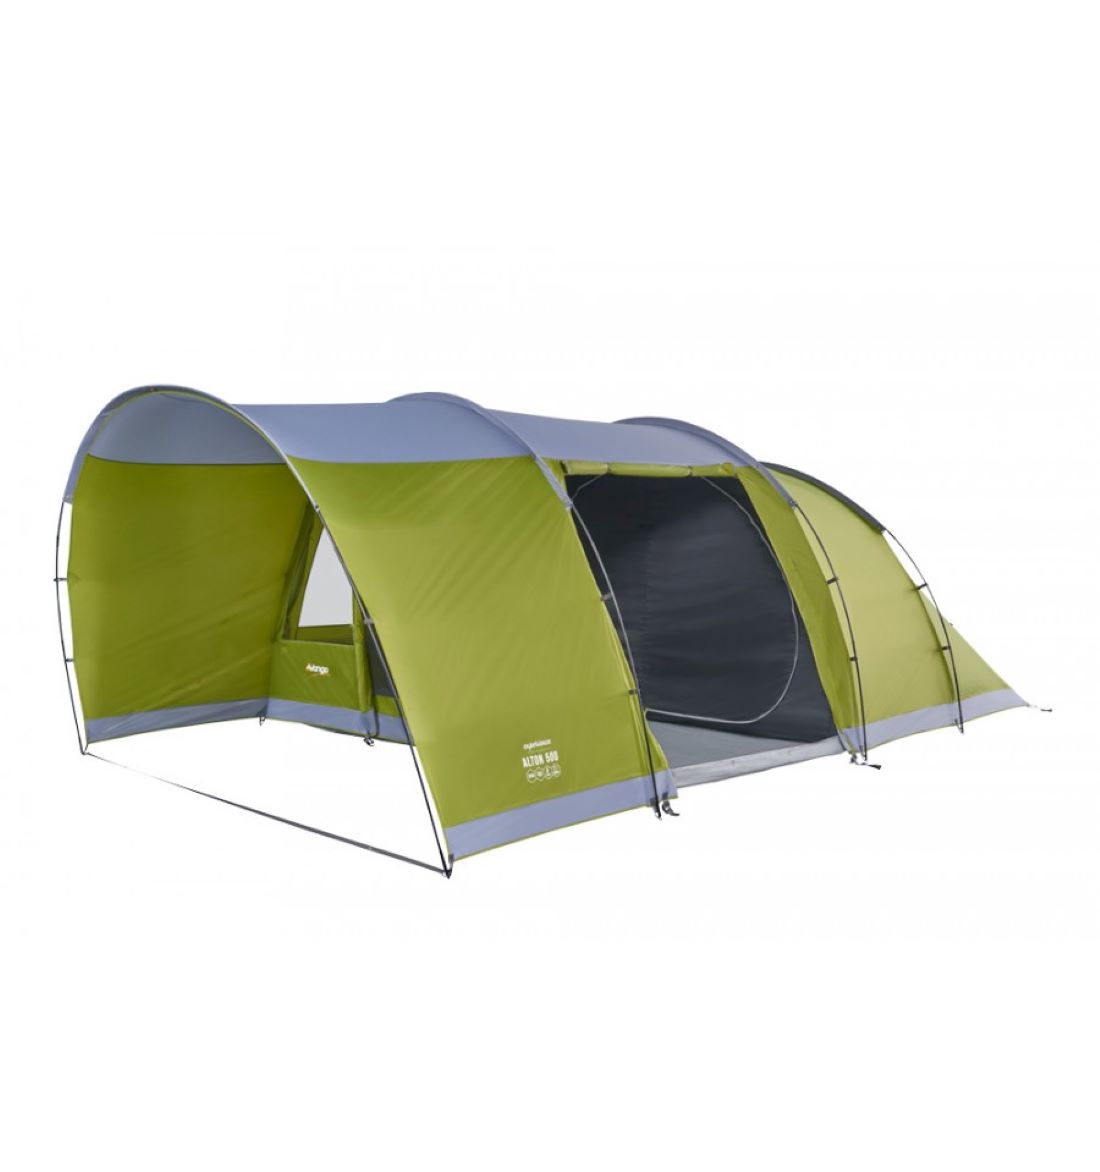 Vango Alton 500 Tent – 5 Person Tent